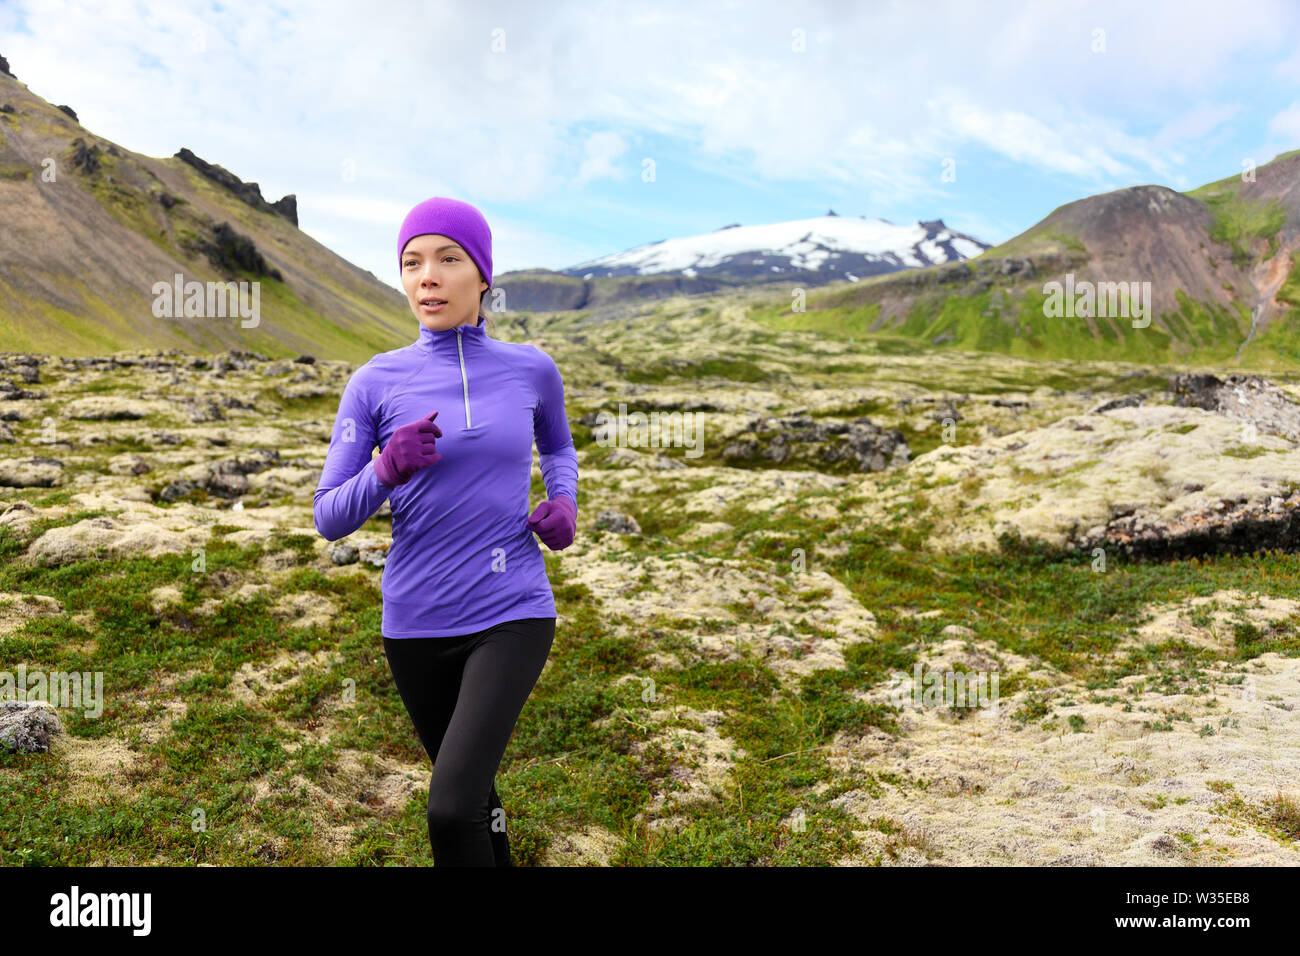 L'exécution de l'exercice - Trail Runner femme athlète. Mettre en place les femmes, sport, jogging à l'extérieur formation modèle vivant de vie sain dans la belle nature de la montagne, Snaefellsjokull, Islande, de Snæfellsnes. Banque D'Images